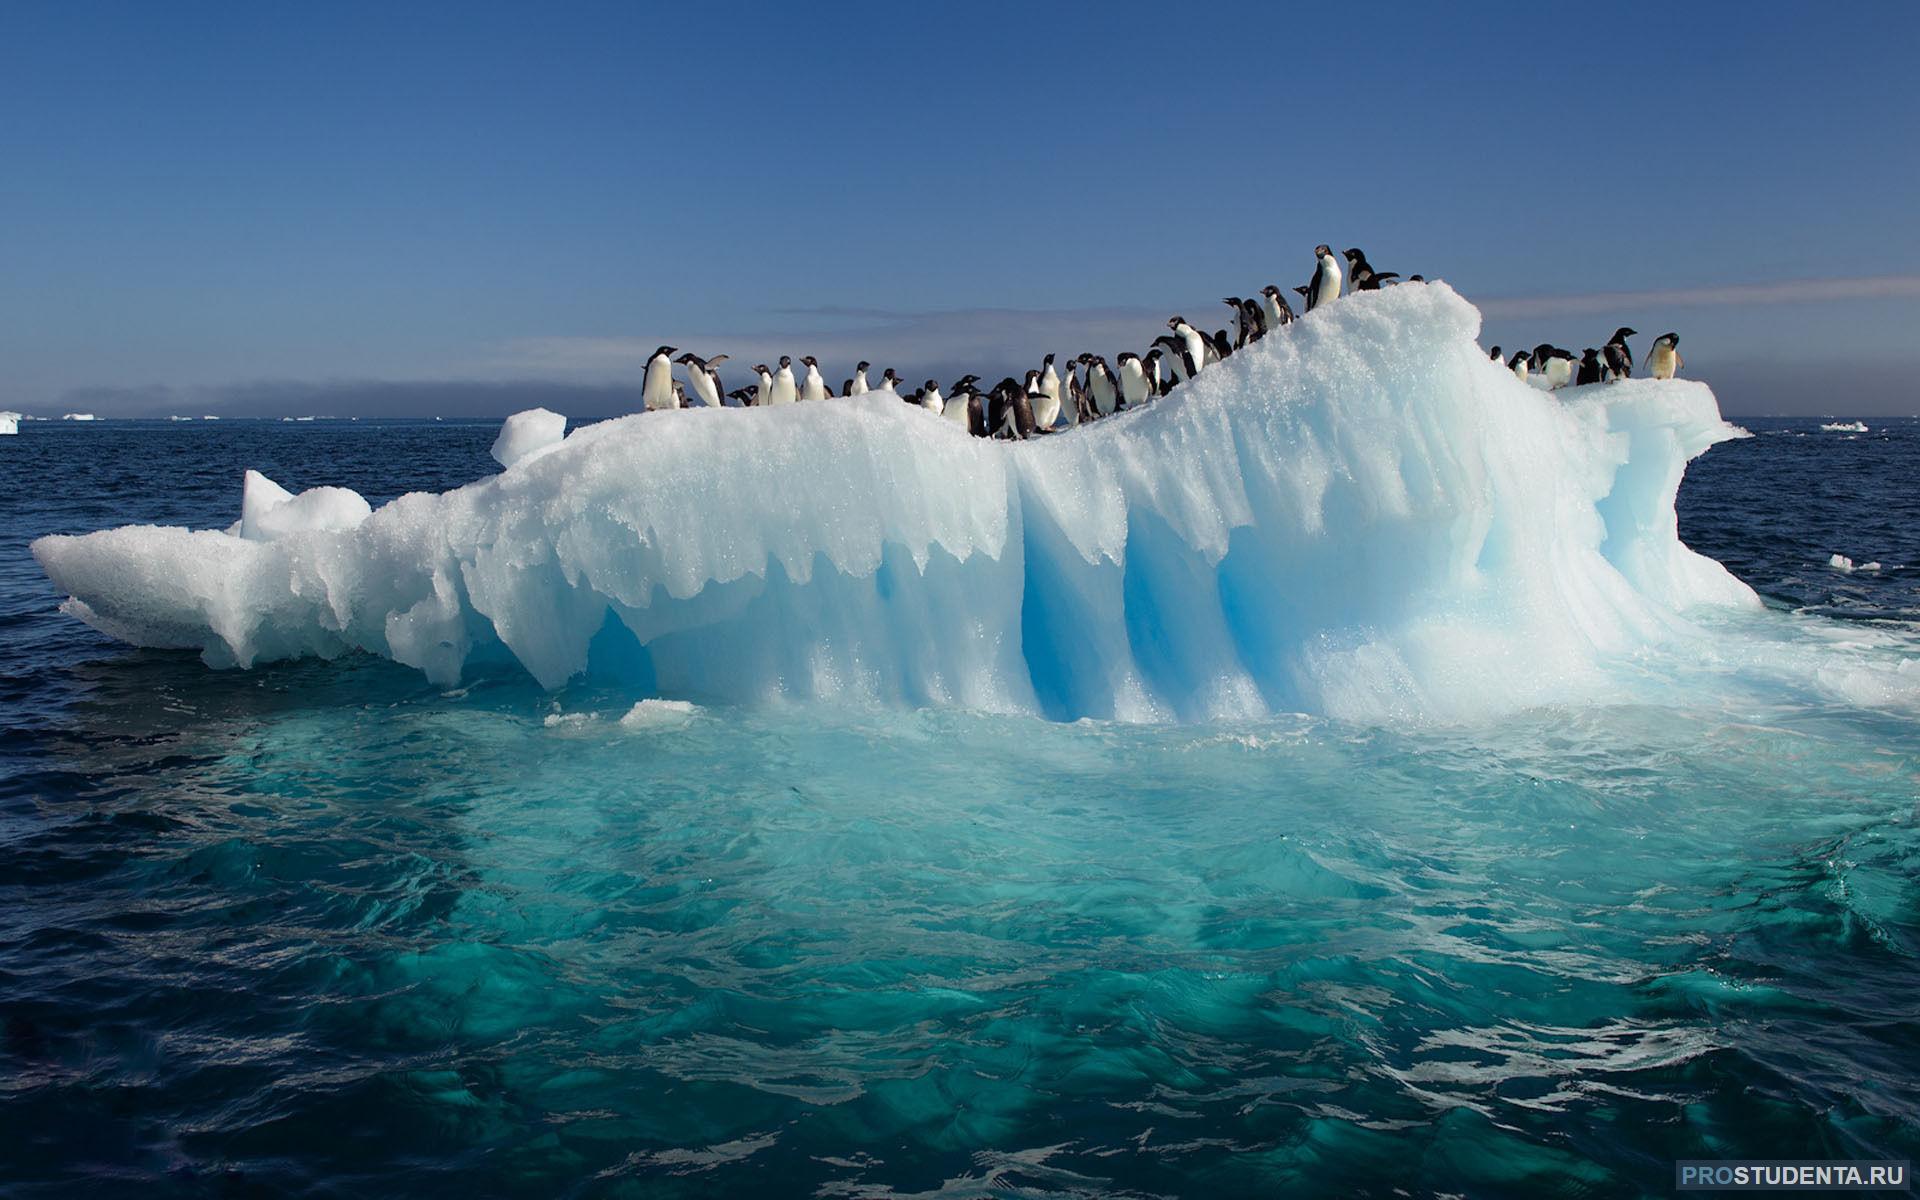 Южный океан является океаном. Арктика Северный Ледовитый океан. Лед Айсберг Арктика Антарктида. Льды и айсберги в Антарктиде. Южный антарктический океан.